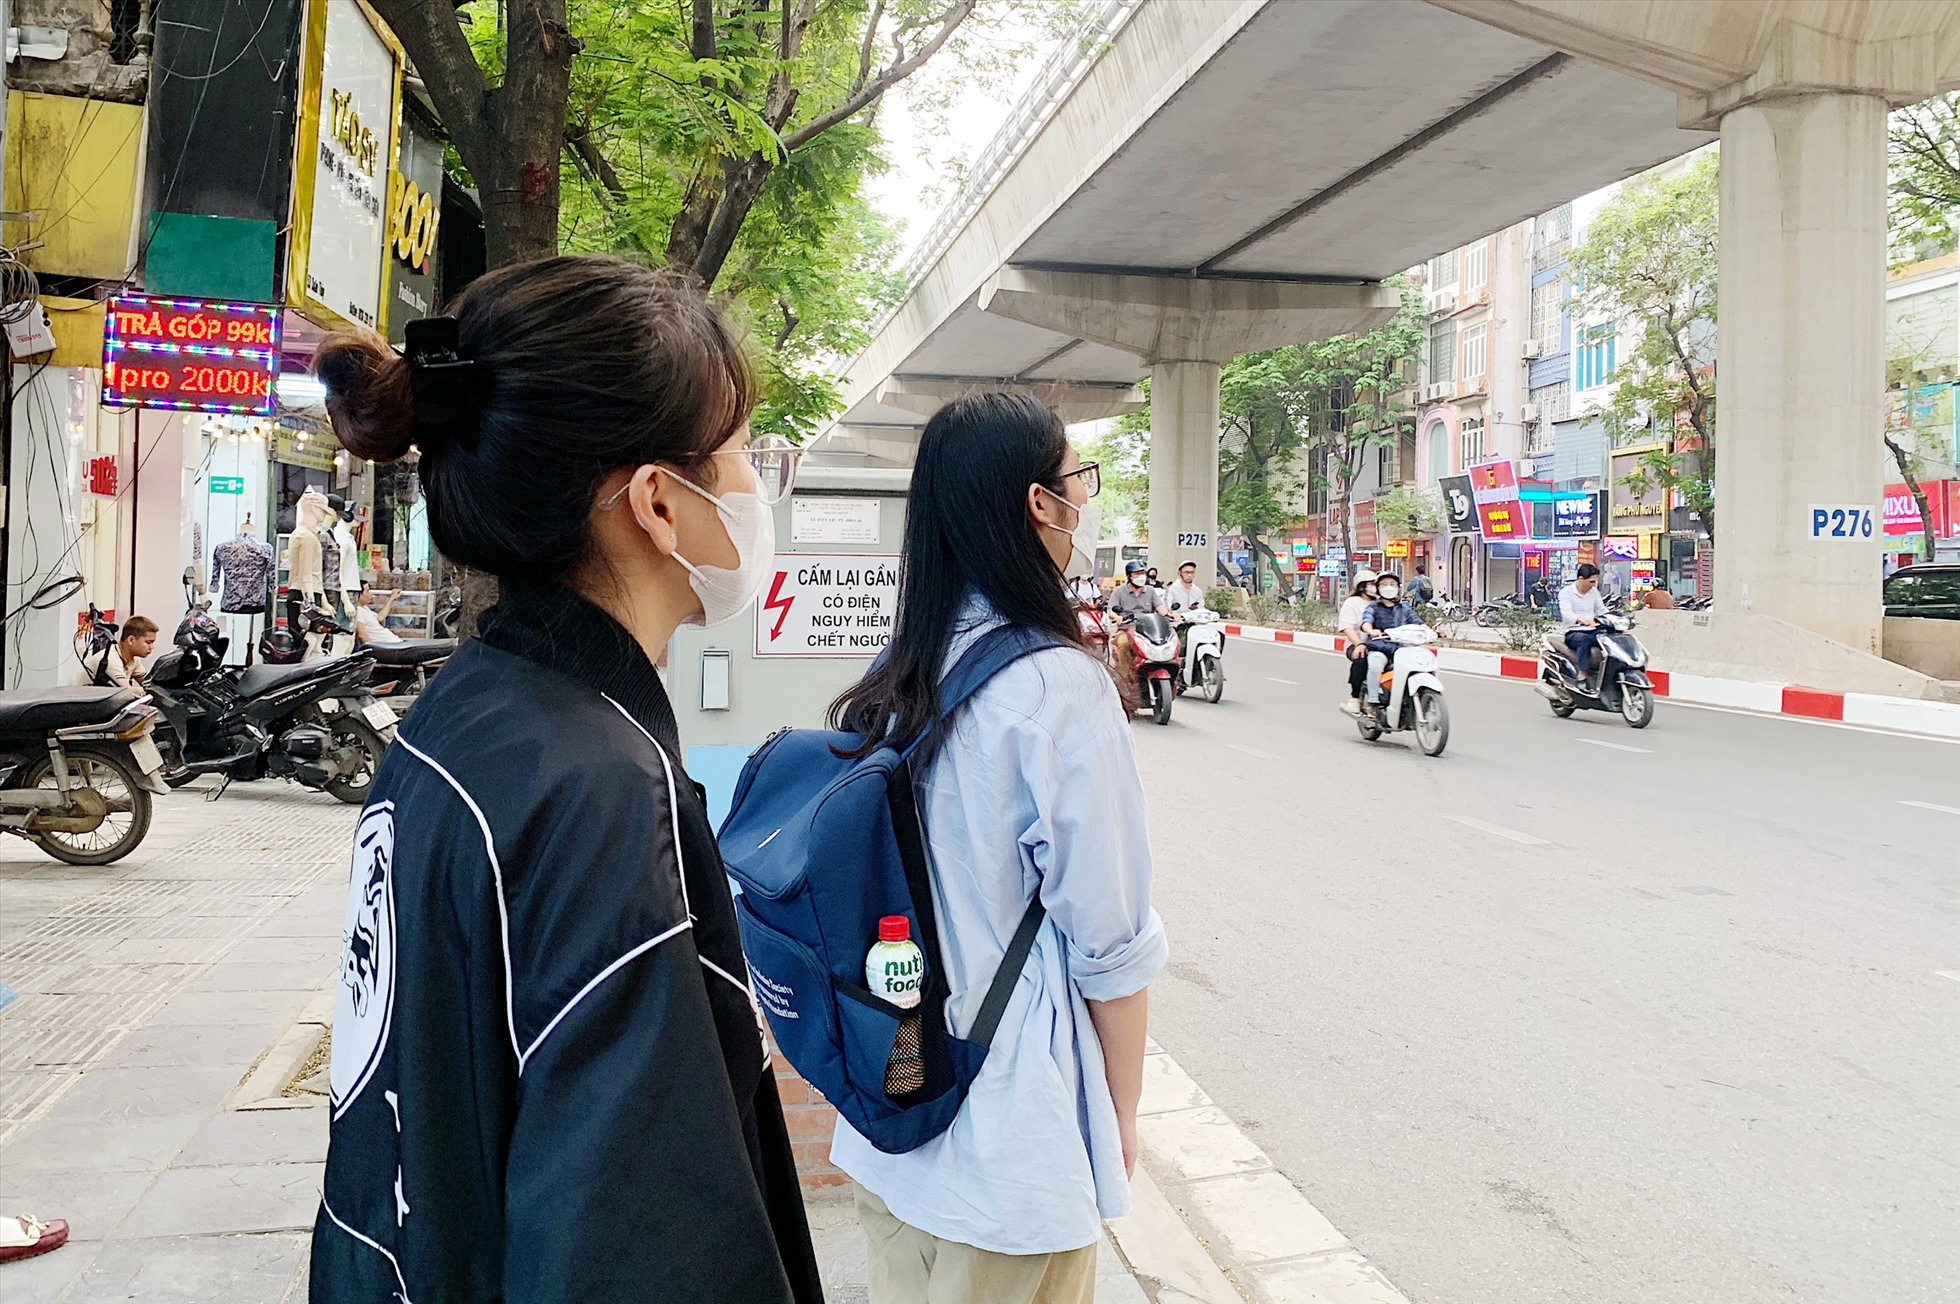 Chị Trần Thanh Vân tập trung nhìn xe buýt đến vì sợ bỏ lỡ chuyến. Ảnh: Thu Hiền